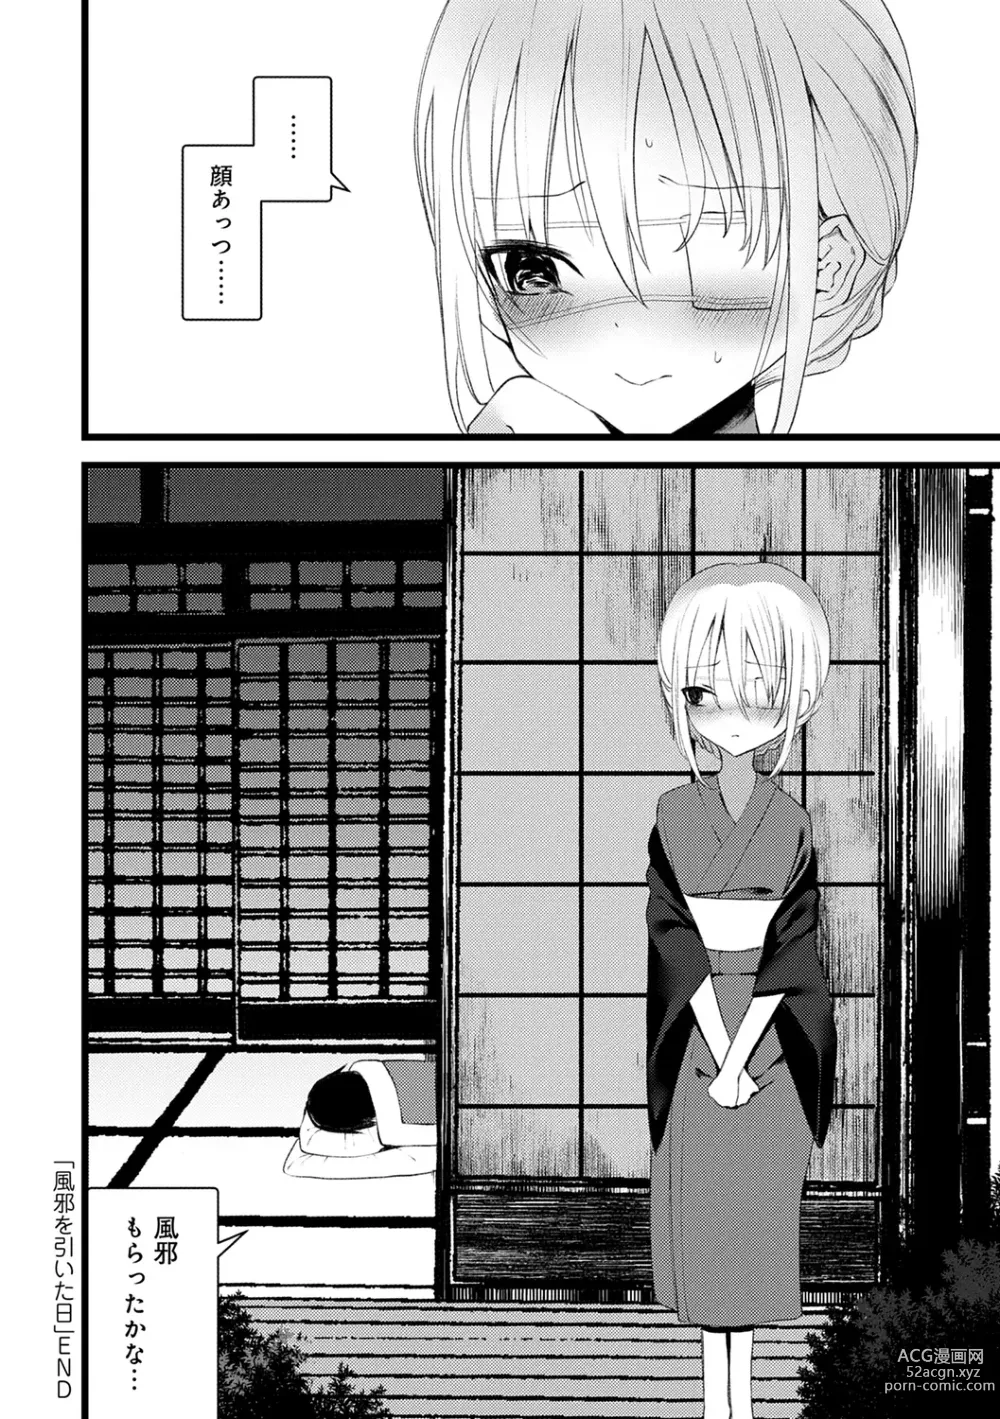 Page 194 of manga Kaiso Ikkenchou -Shonen Kaiki Inwashuu-